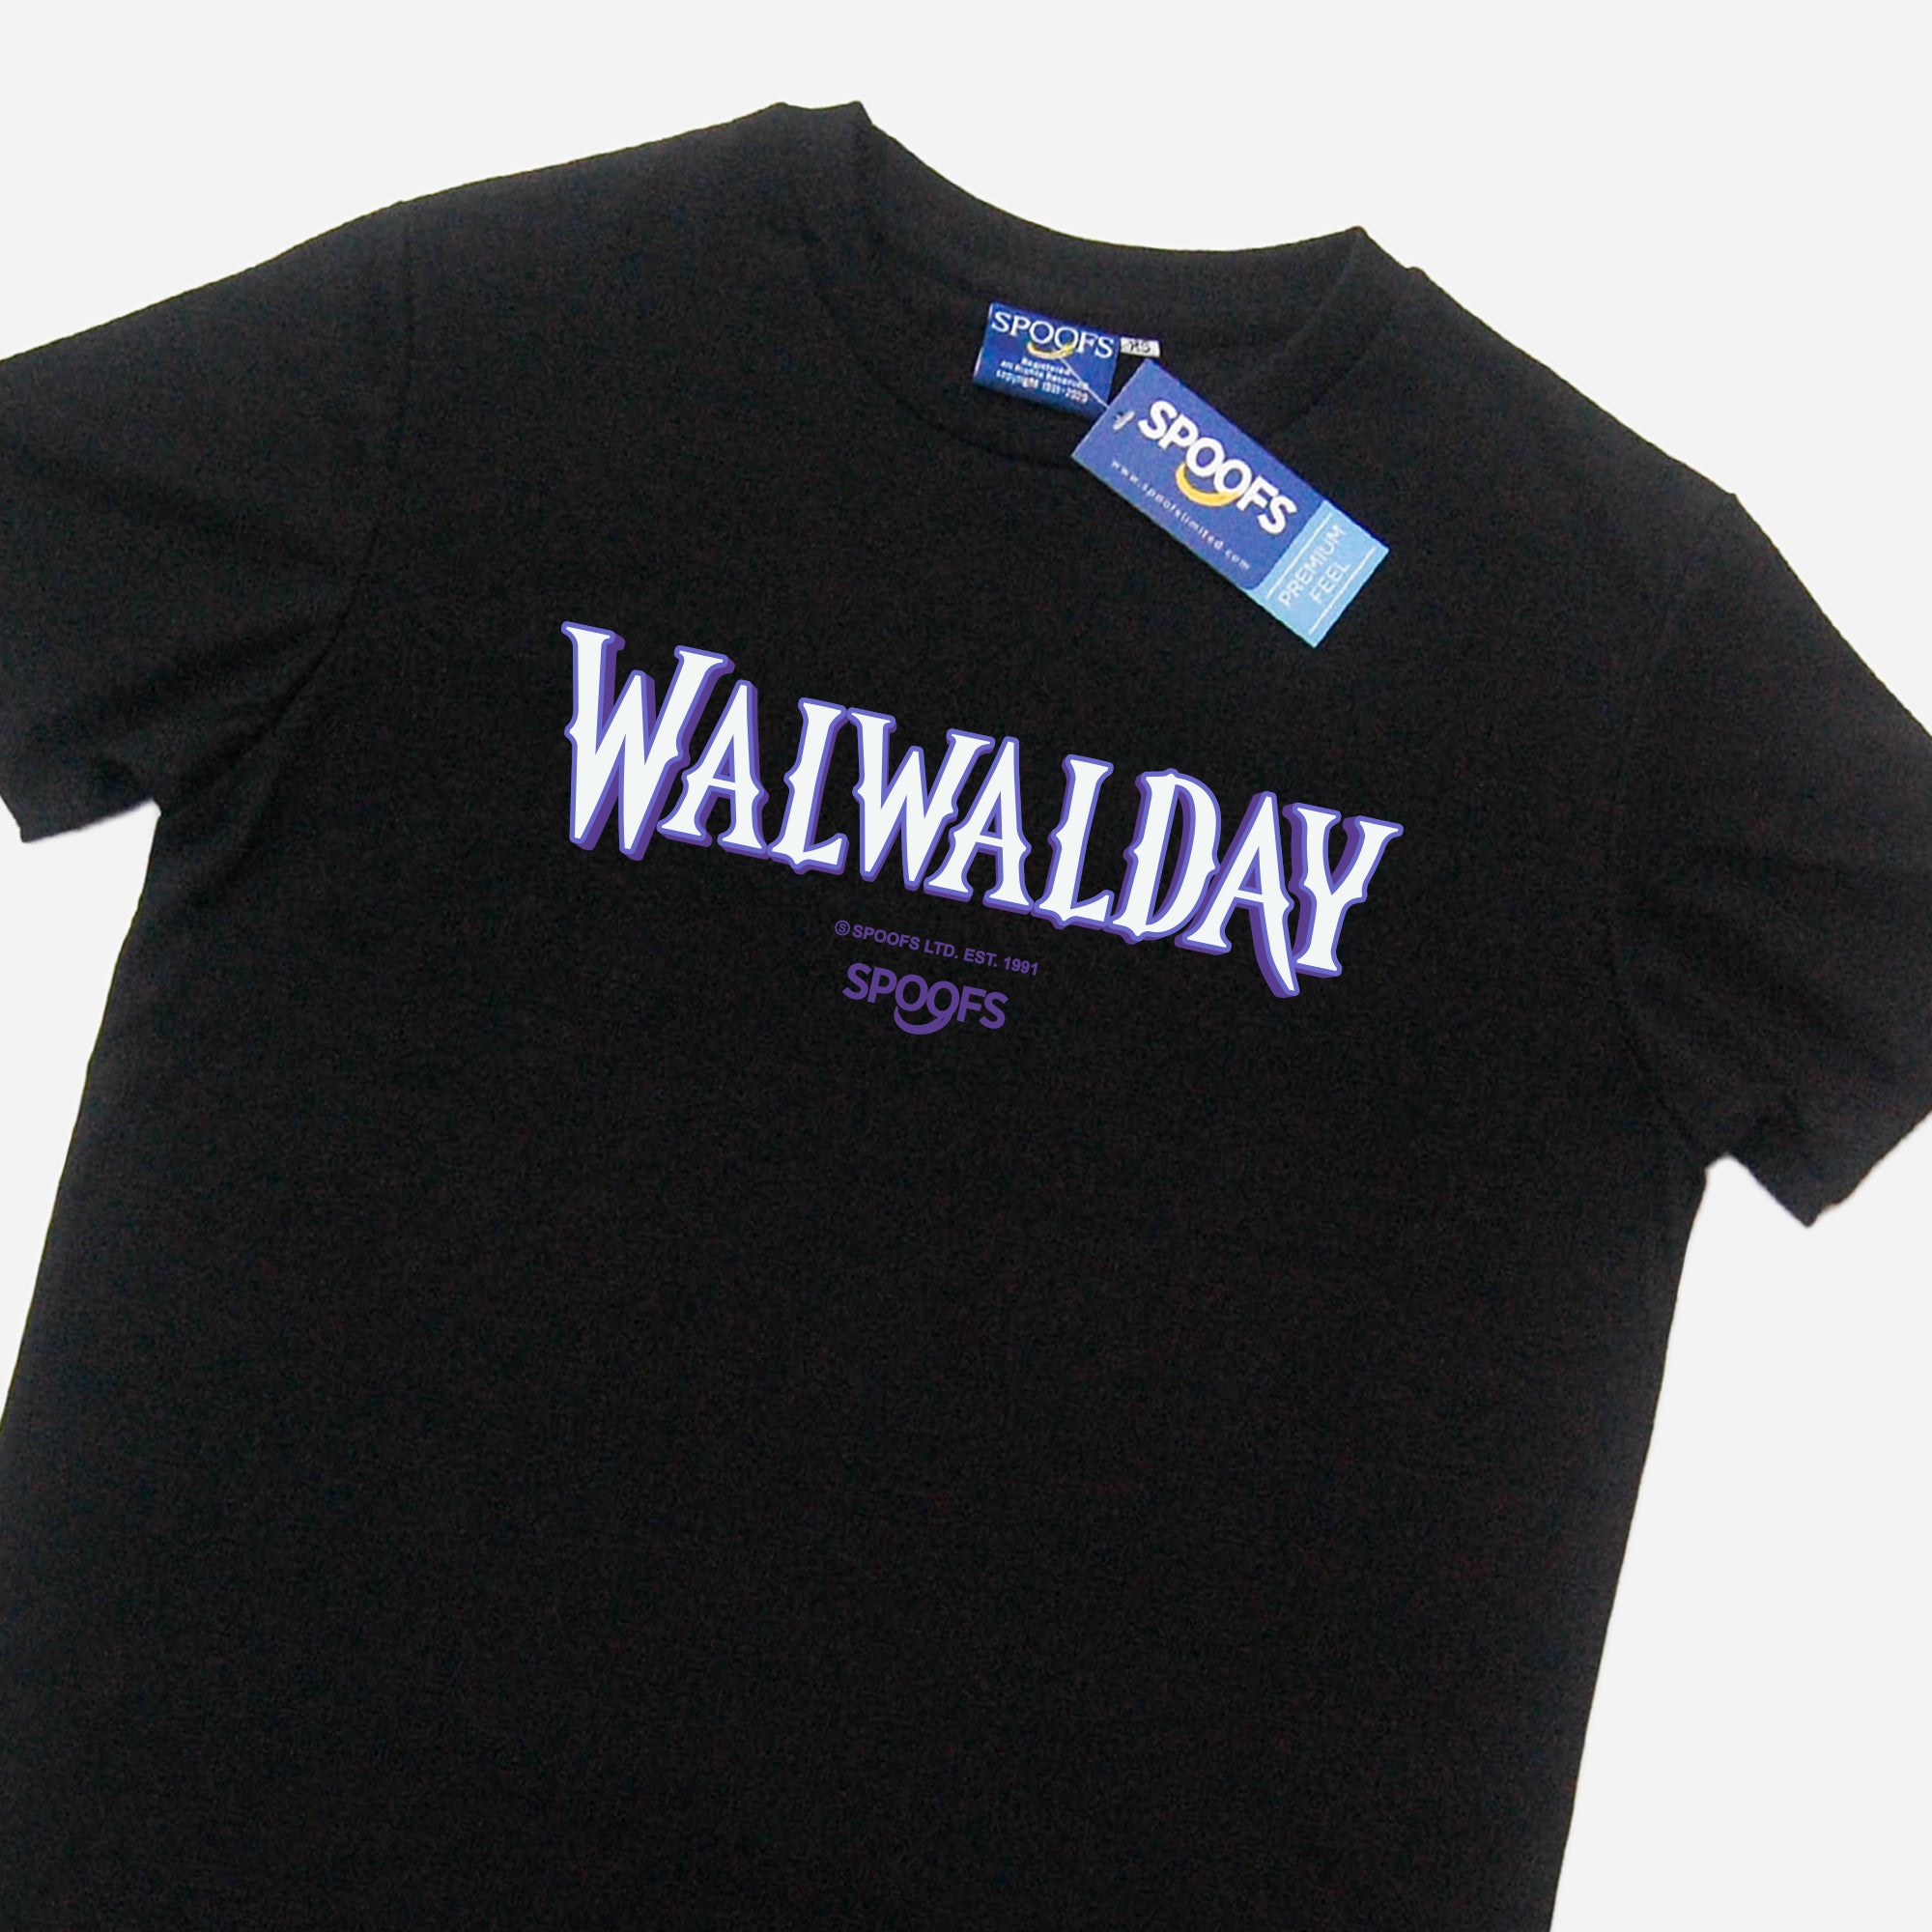 Walwalday (Black)